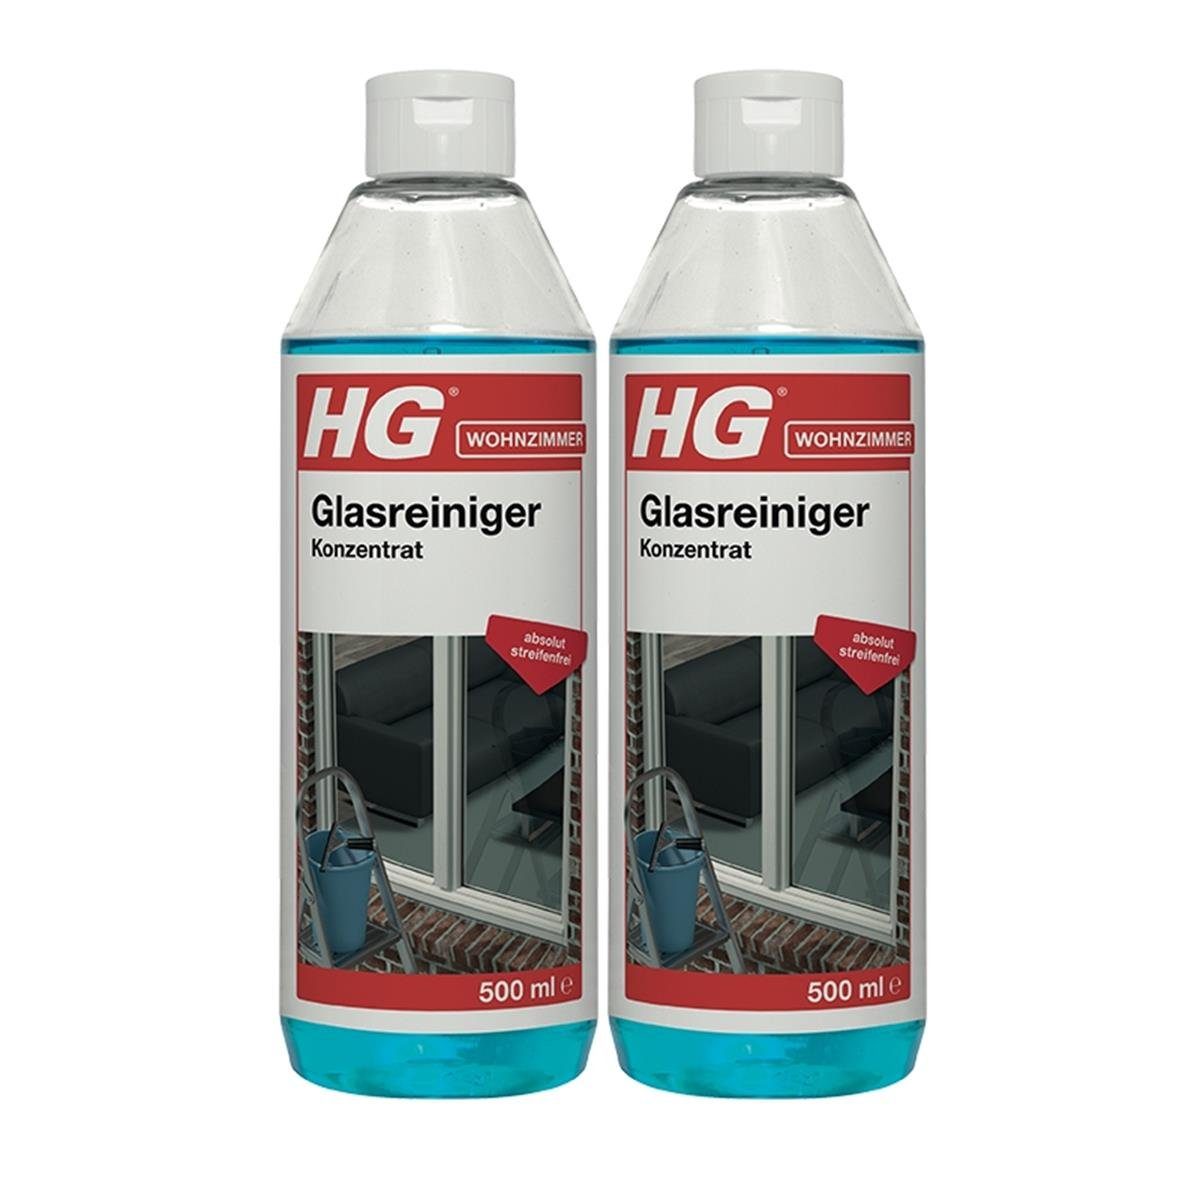 HG HG Glasreiniger Konzentrat 500ml - Absolut schlierenfrei (2er Pack) Glasreiniger | Glasreiniger